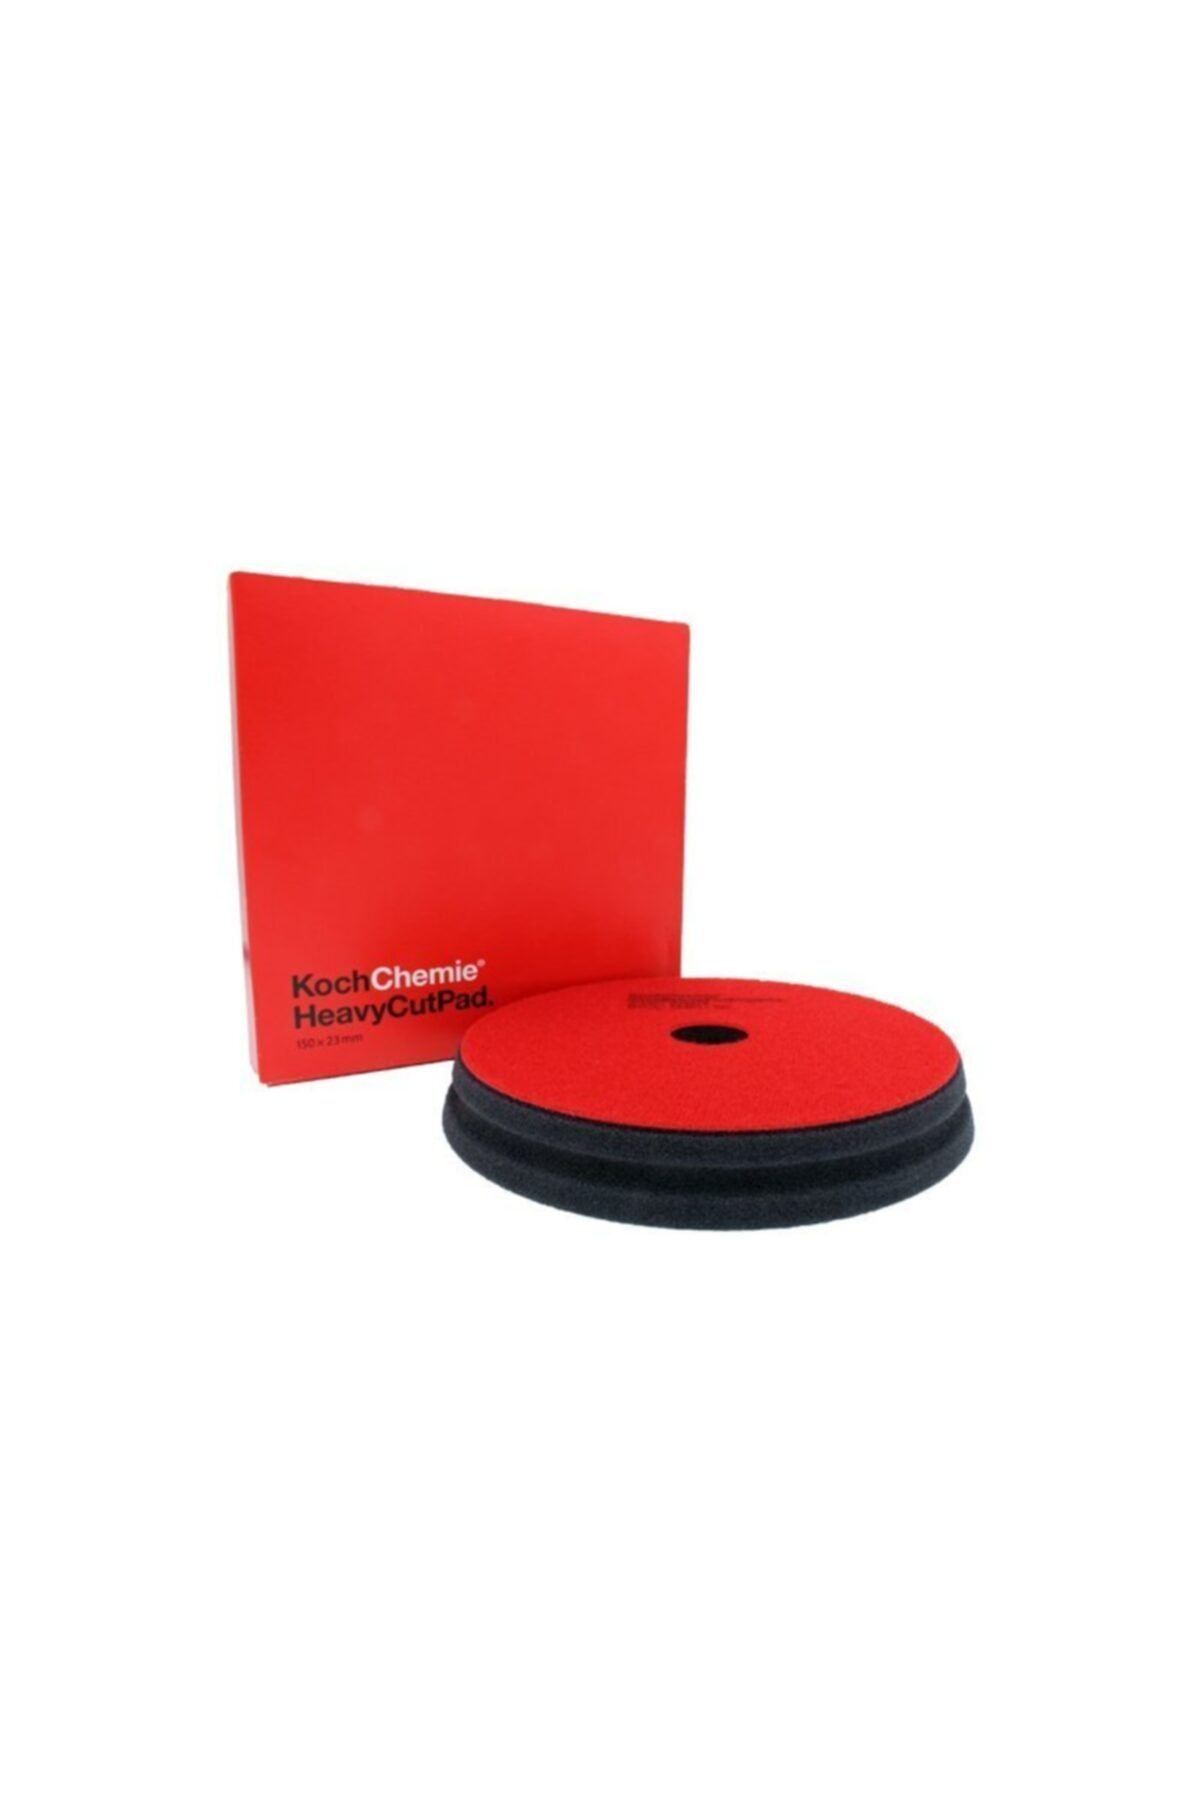 Koch Chemie Hc - Ağır Çizik Alıcı Sünger Pad 150*23mm Kırmızı Seri